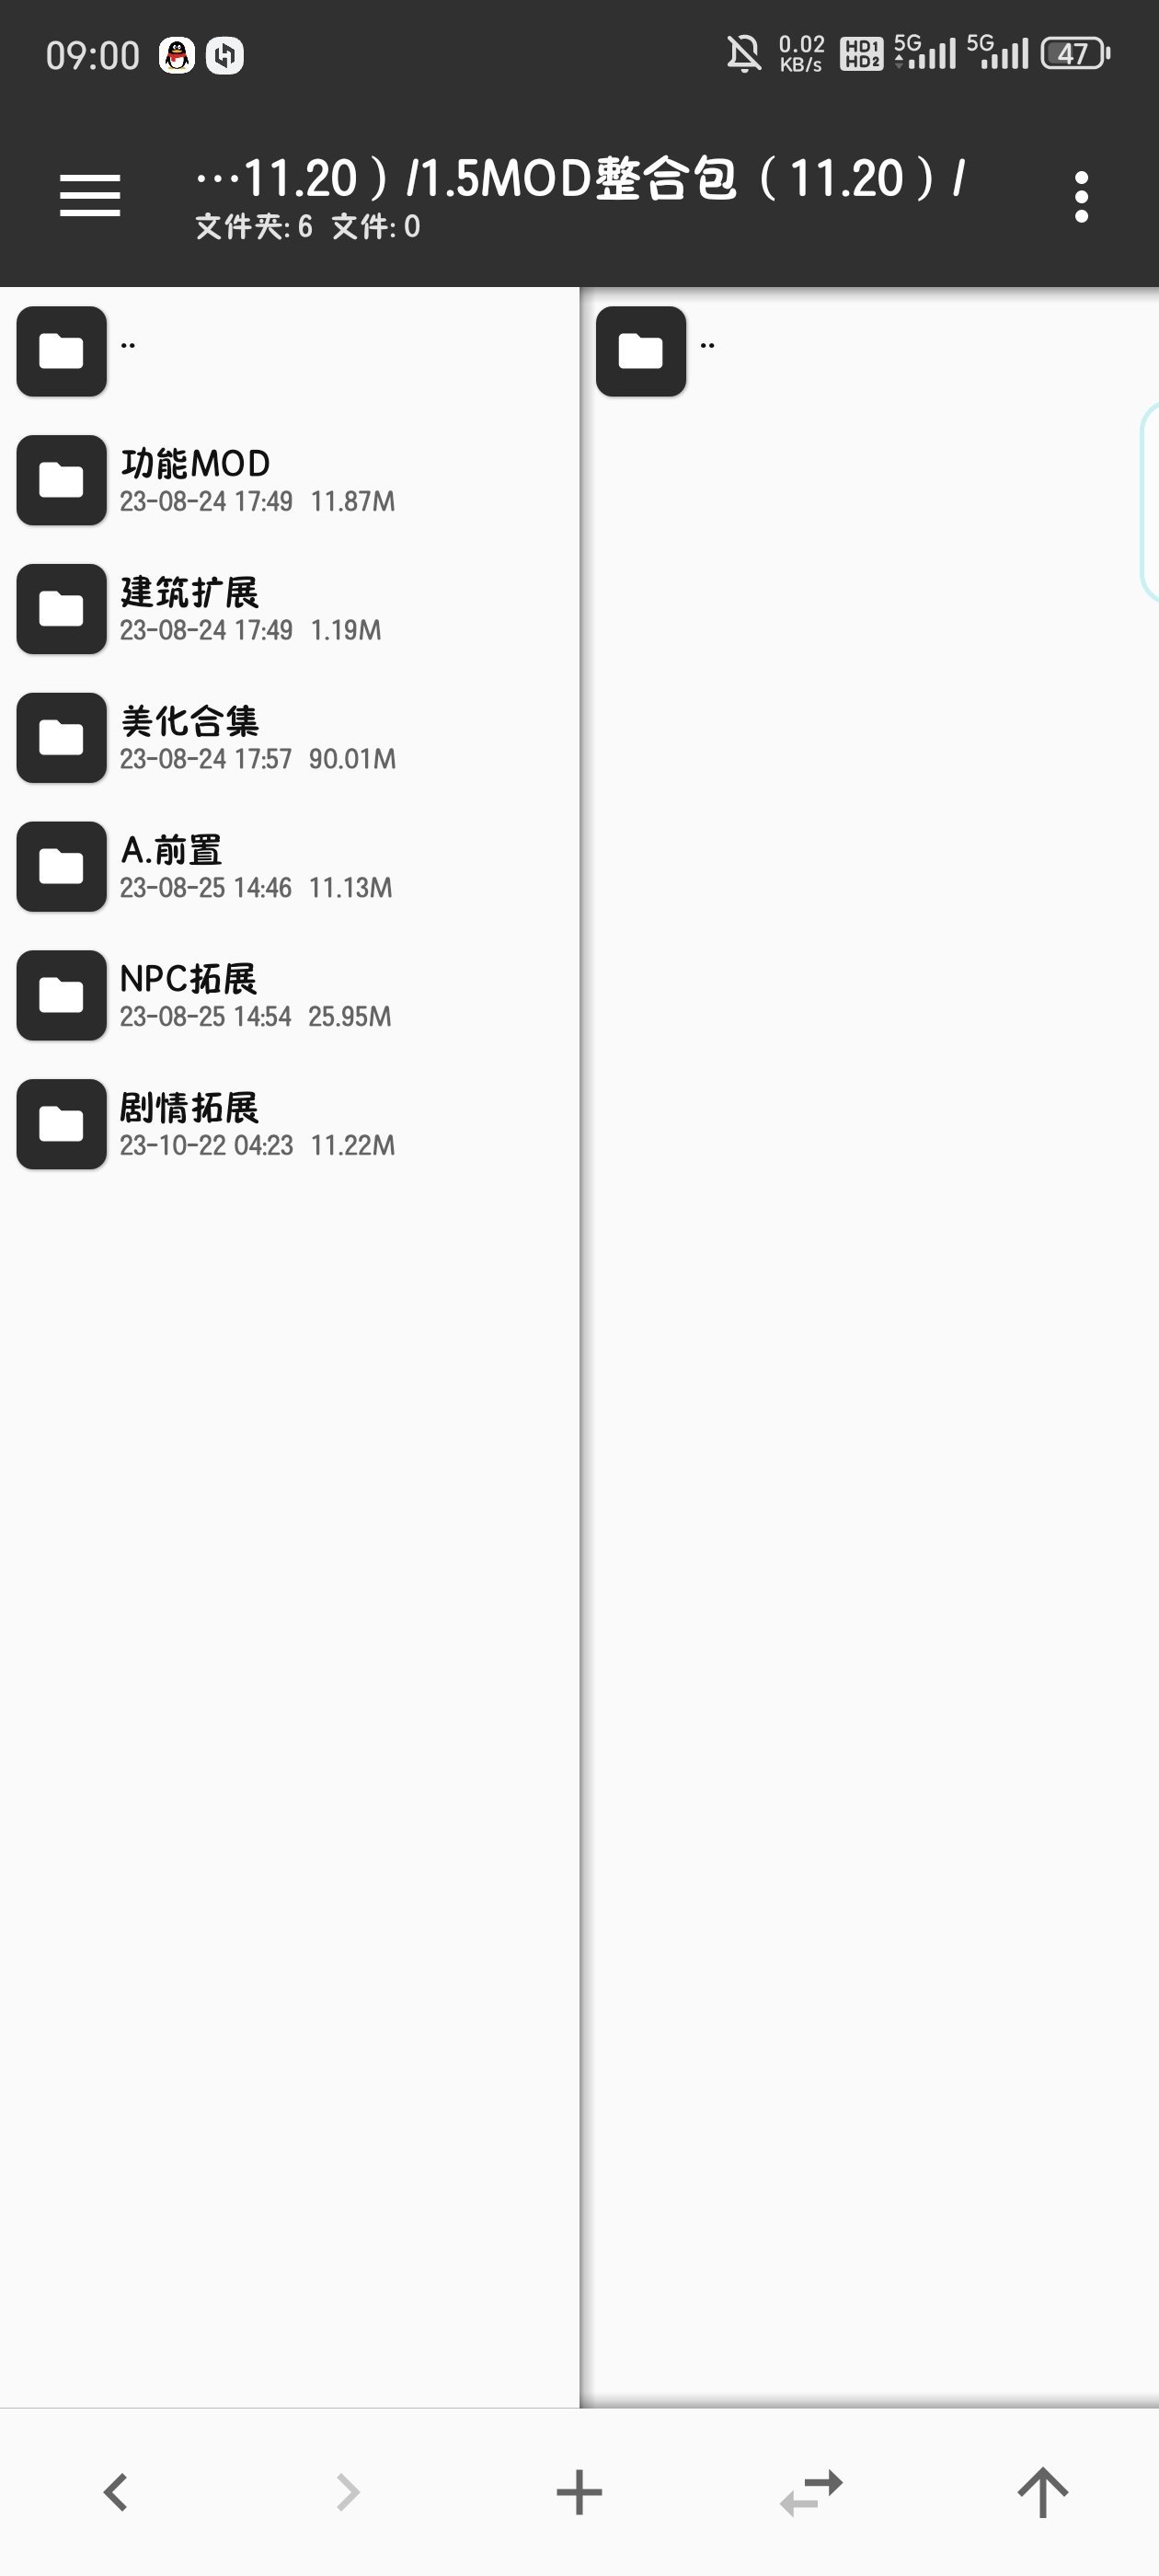 星露谷物语手机版mod安装、电脑版存档导入手机-第23张